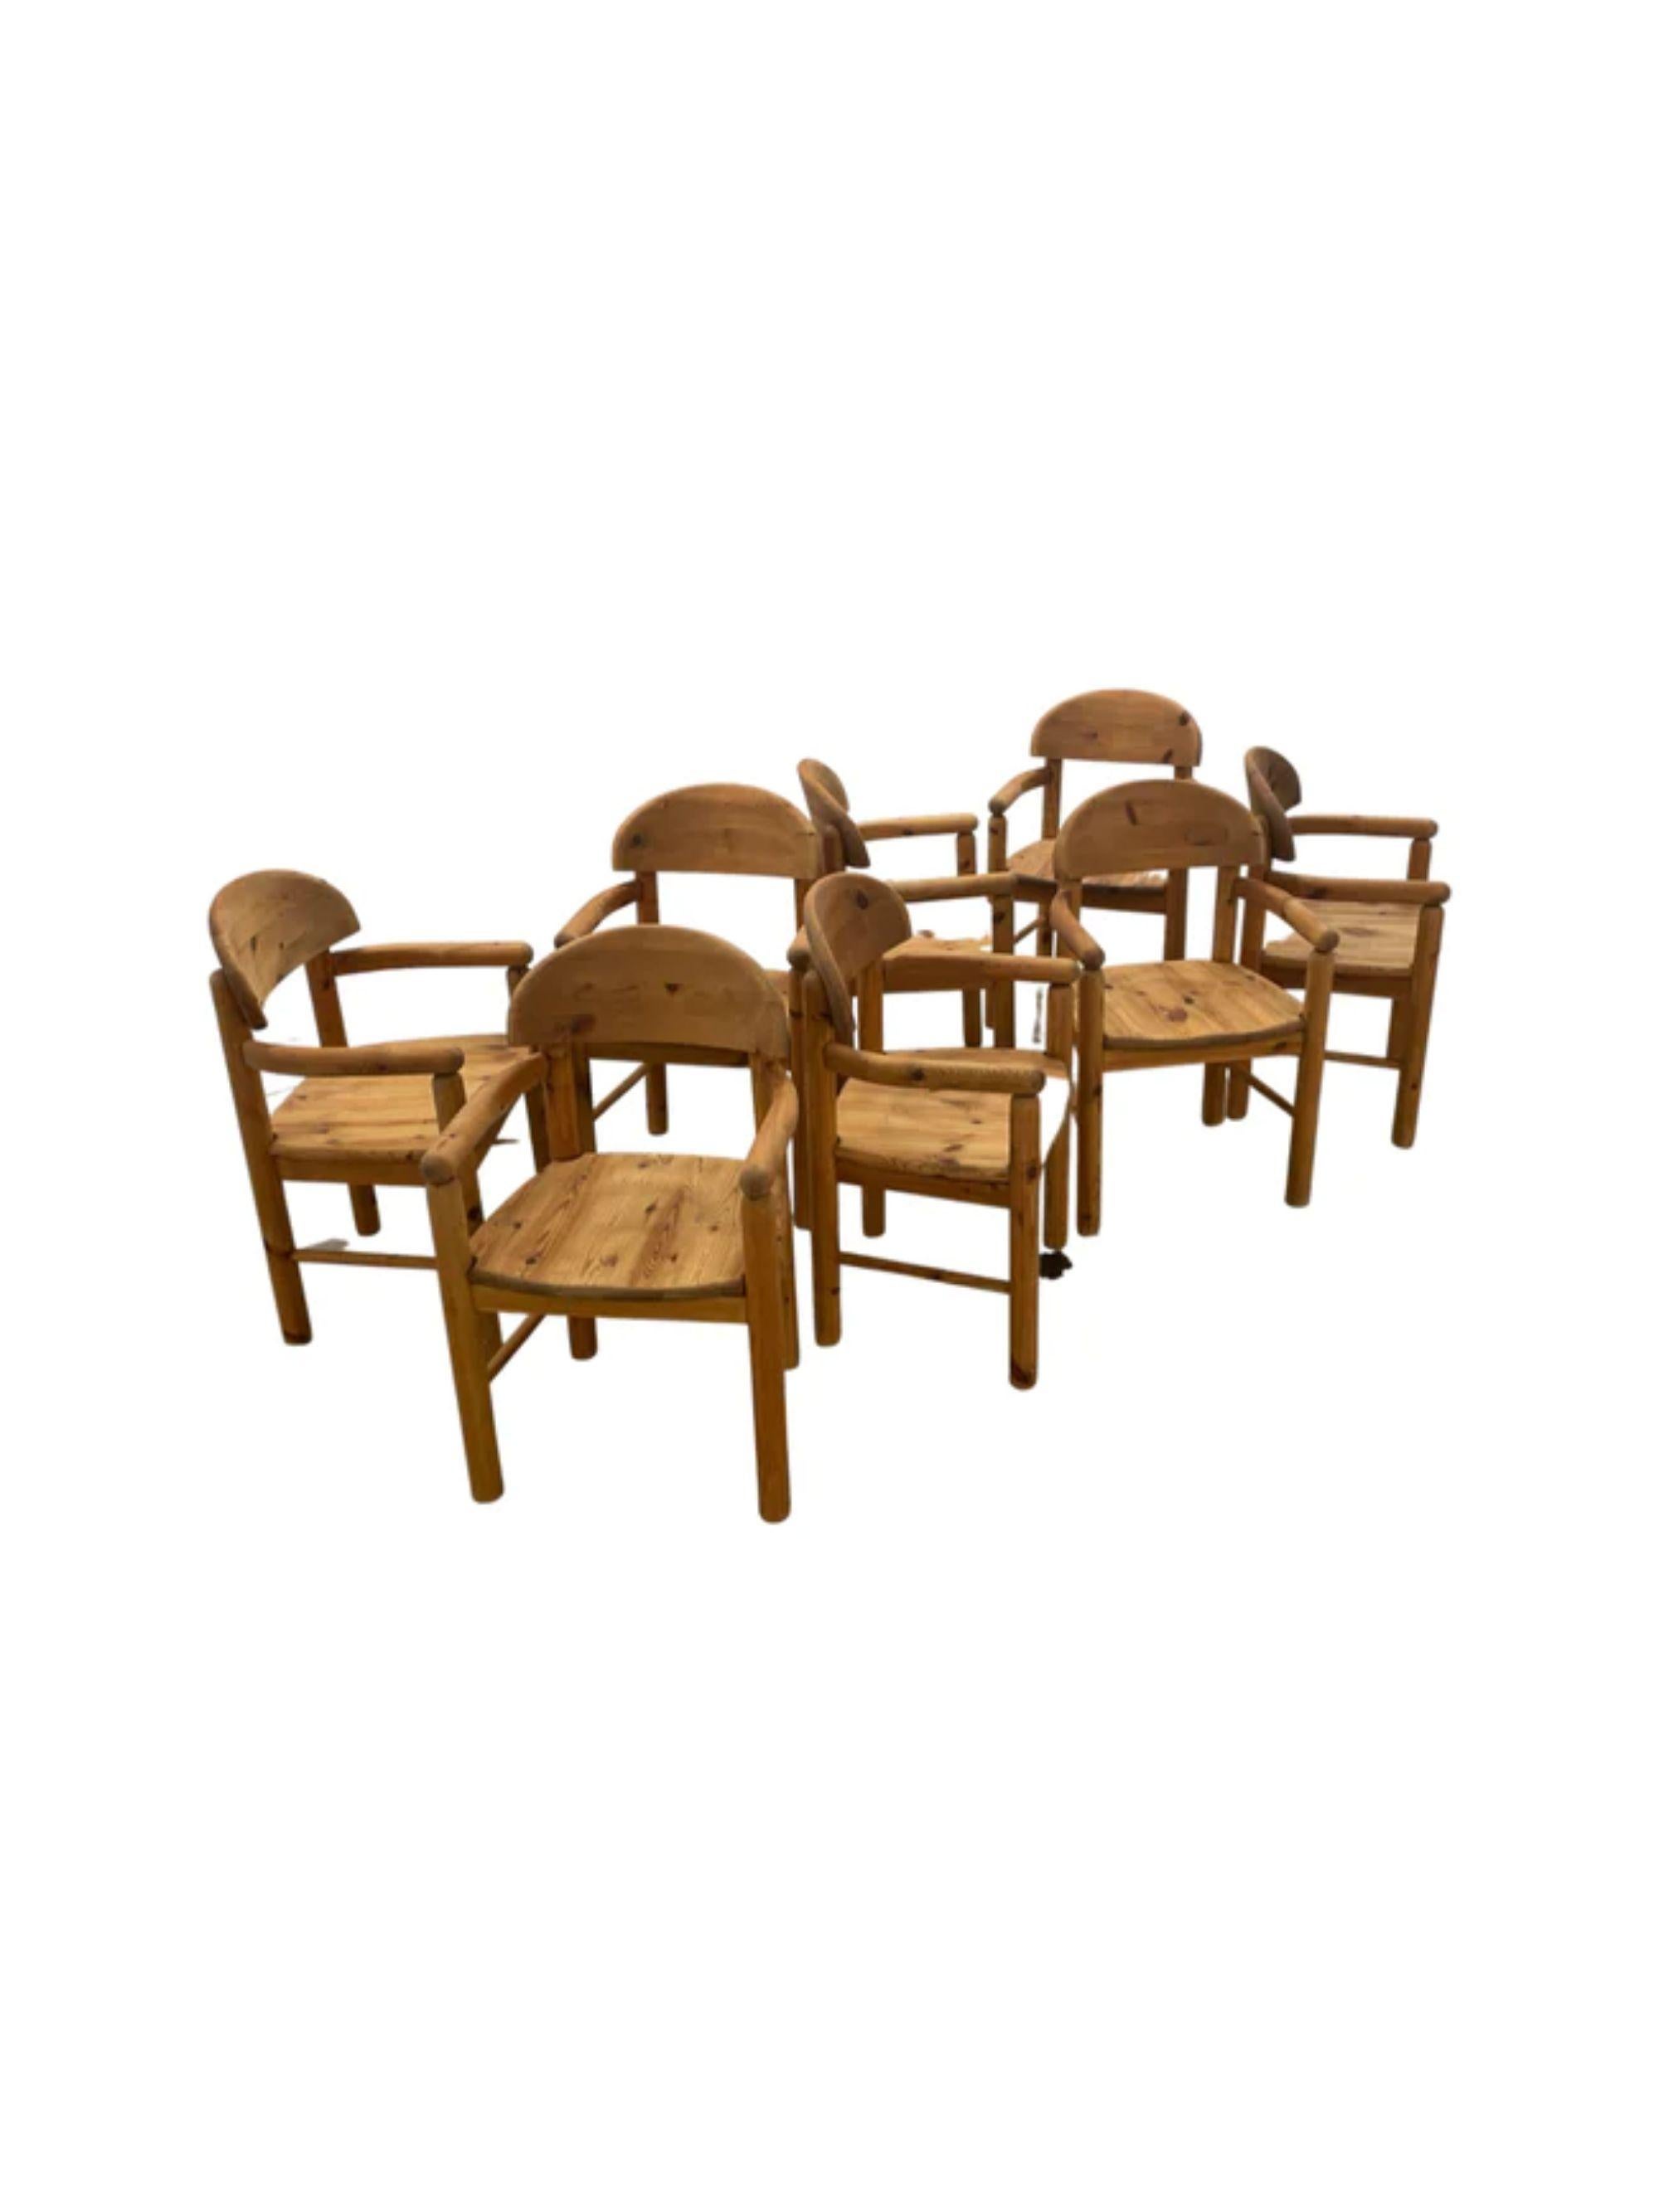 Rainer Daumiller, rare ensemble de huit fauteuils de salle à manger pour la scierie Hirtschals, Danemark, 1970

Informations supplémentaires :
MATERIAL : Pin massif
Dimensions : 34 1/2